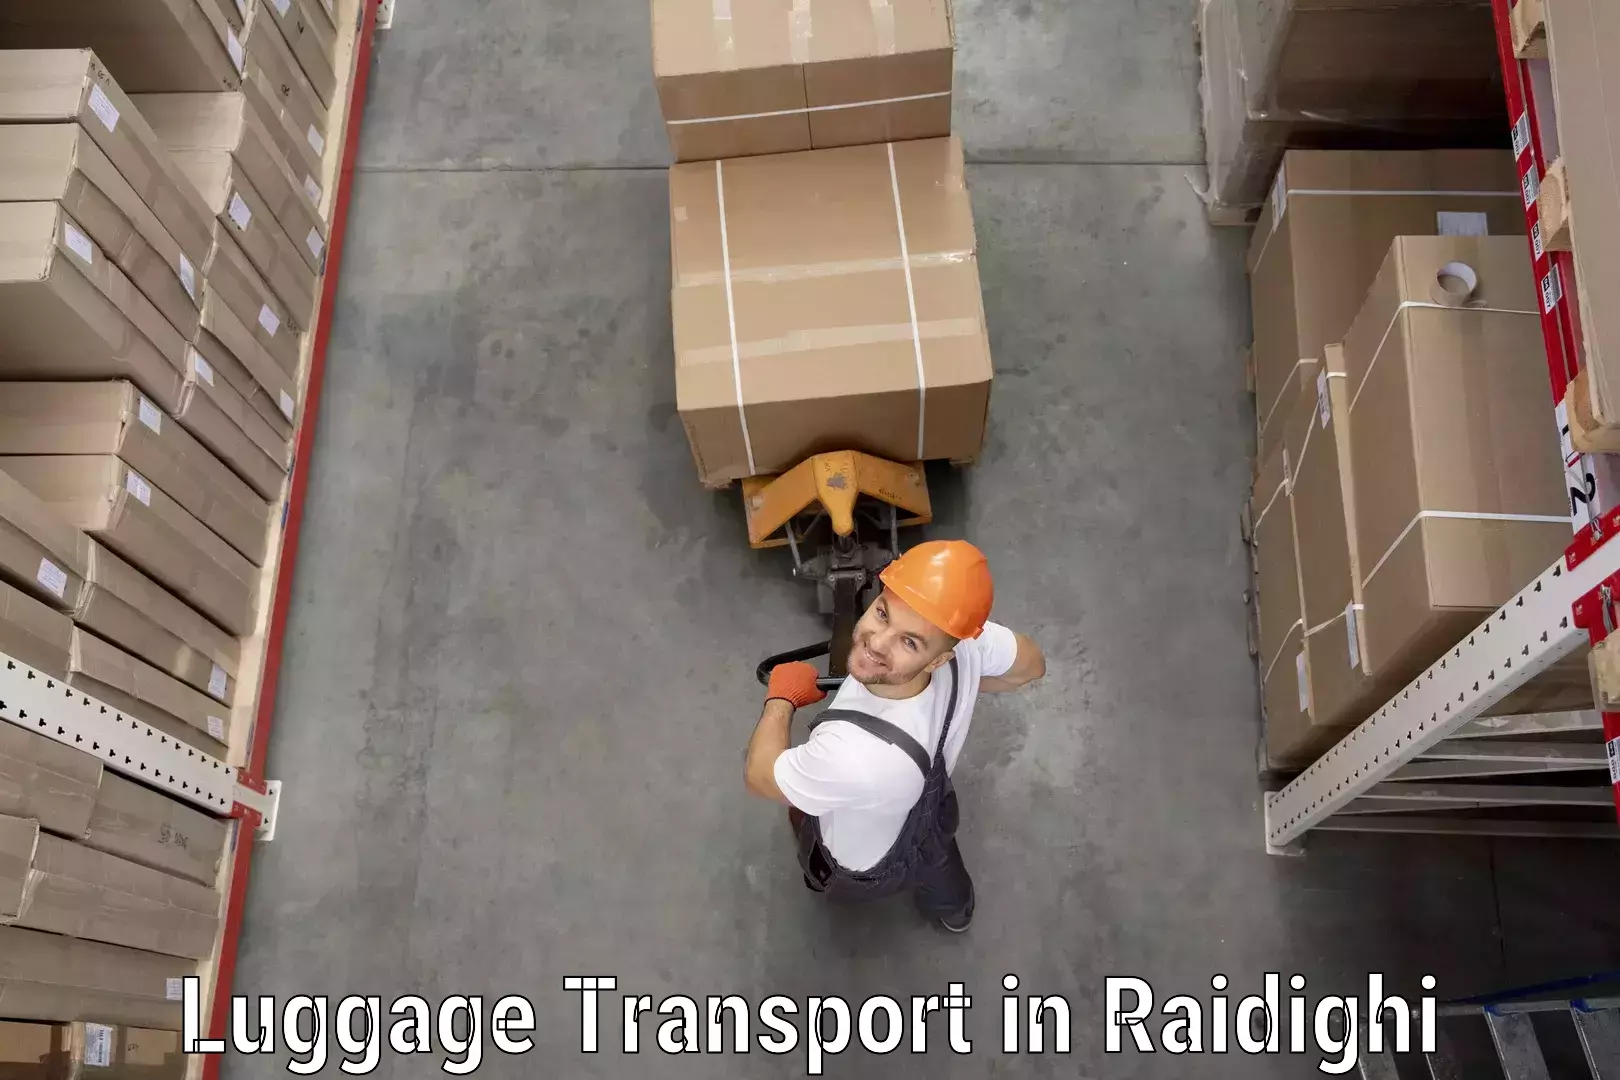 Luggage transit service in Raidighi